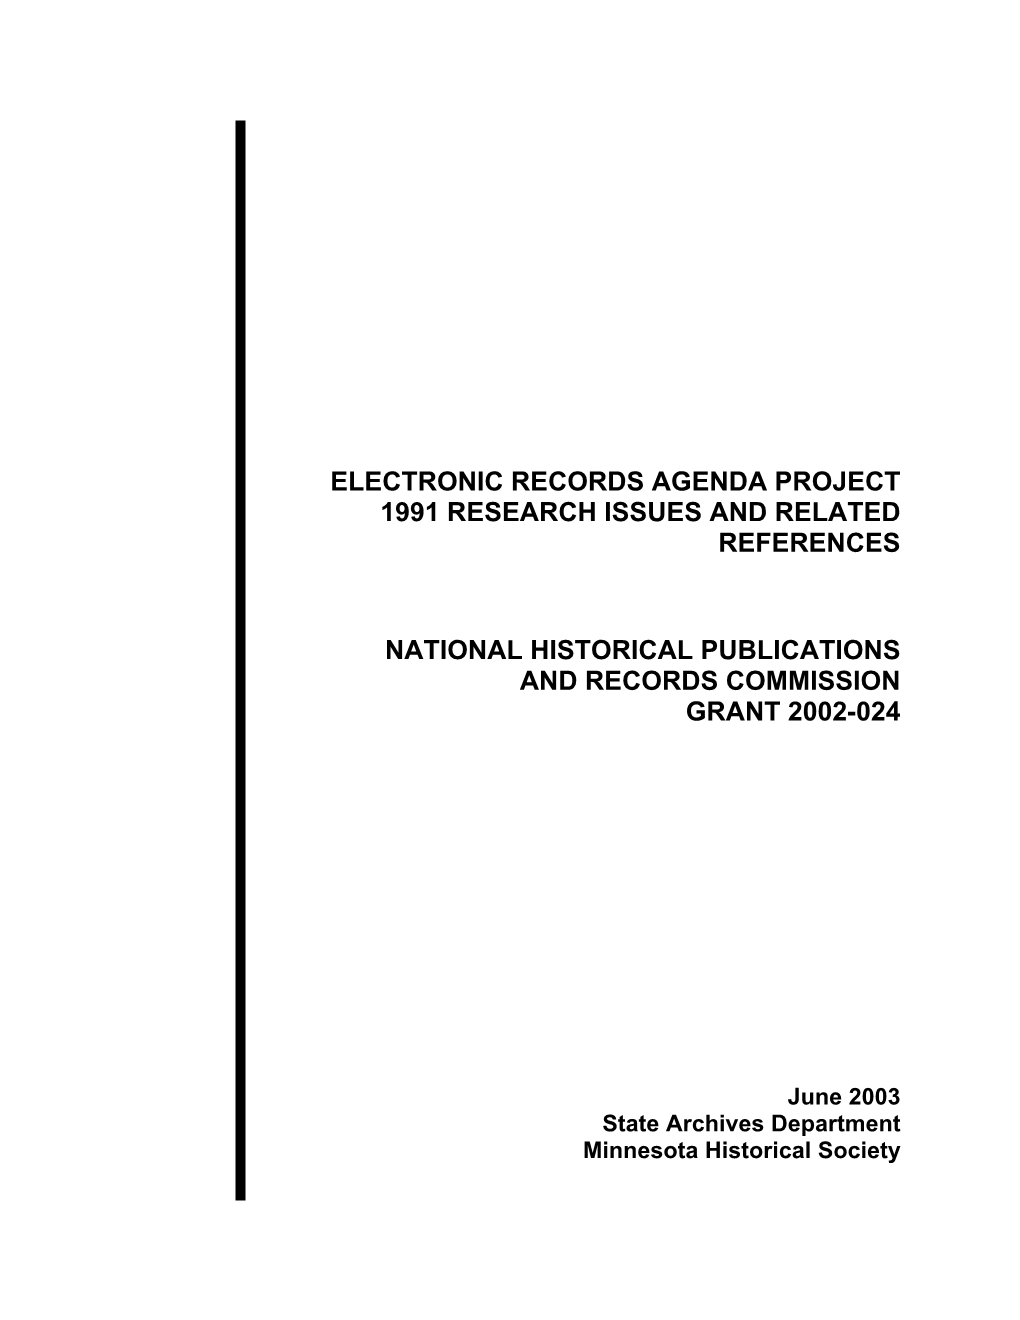 NHPRC ER Agenda 1991 References June 2003